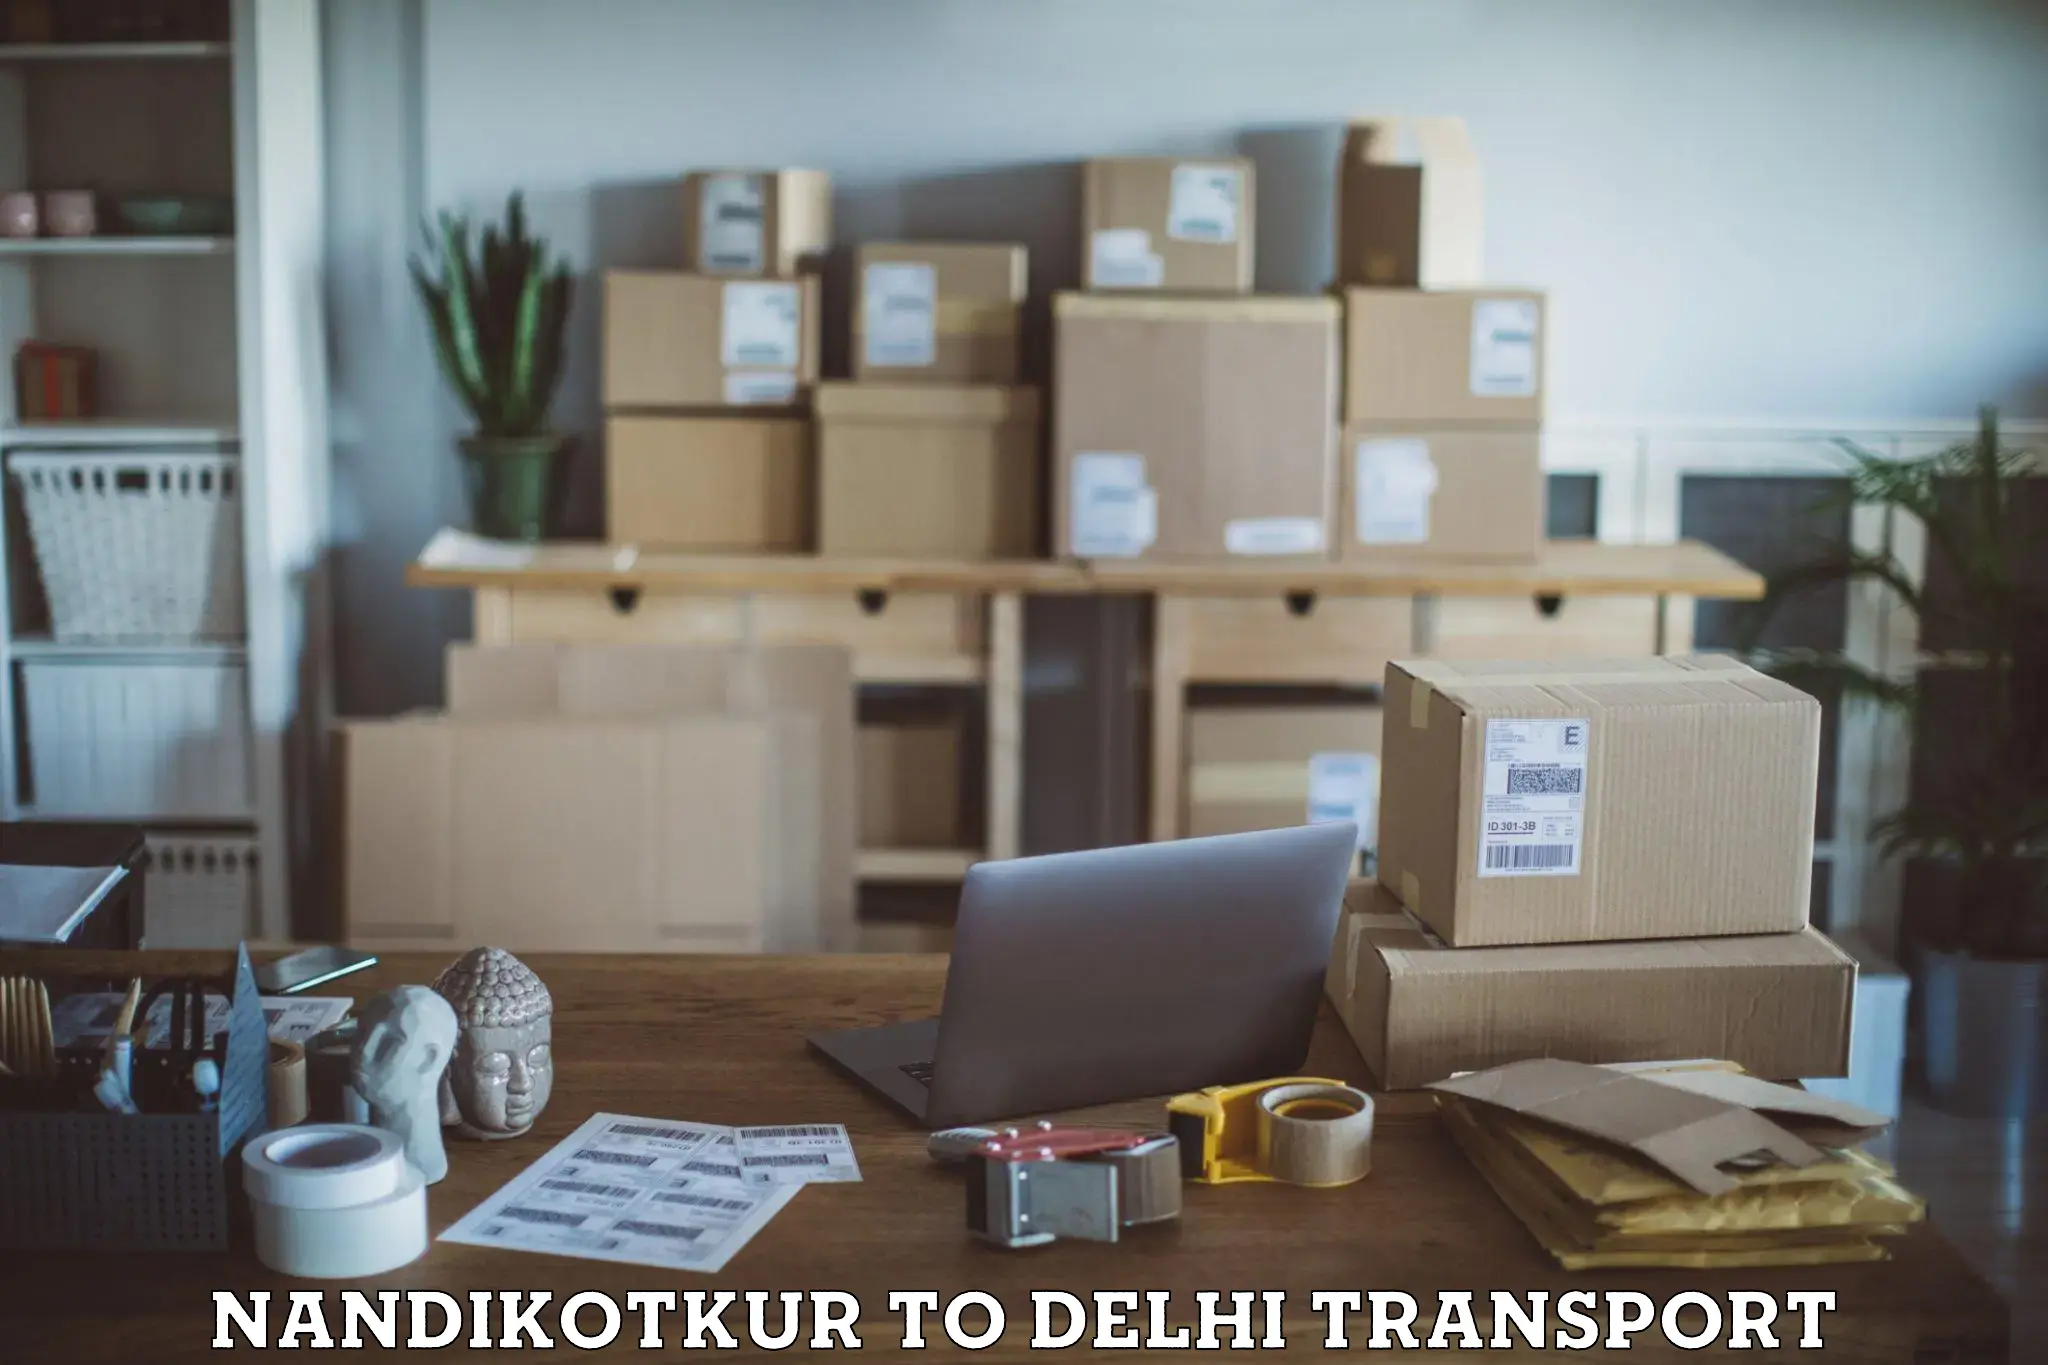 Interstate transport services Nandikotkur to IIT Delhi